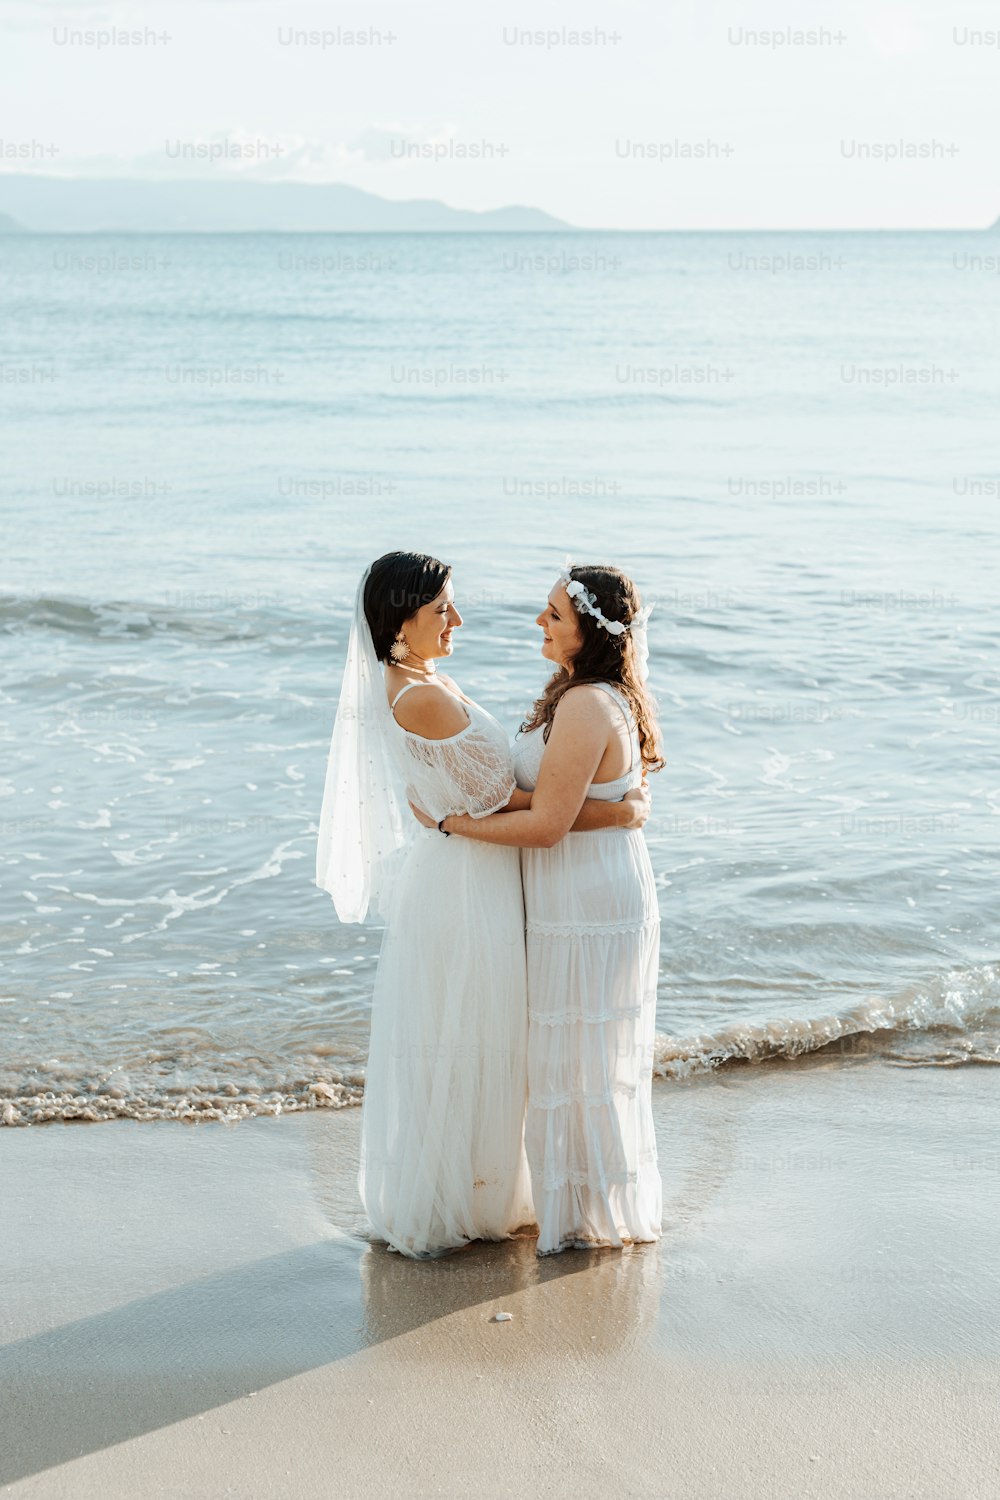 Un par de mujeres de pie una al lado de la otra en una playa